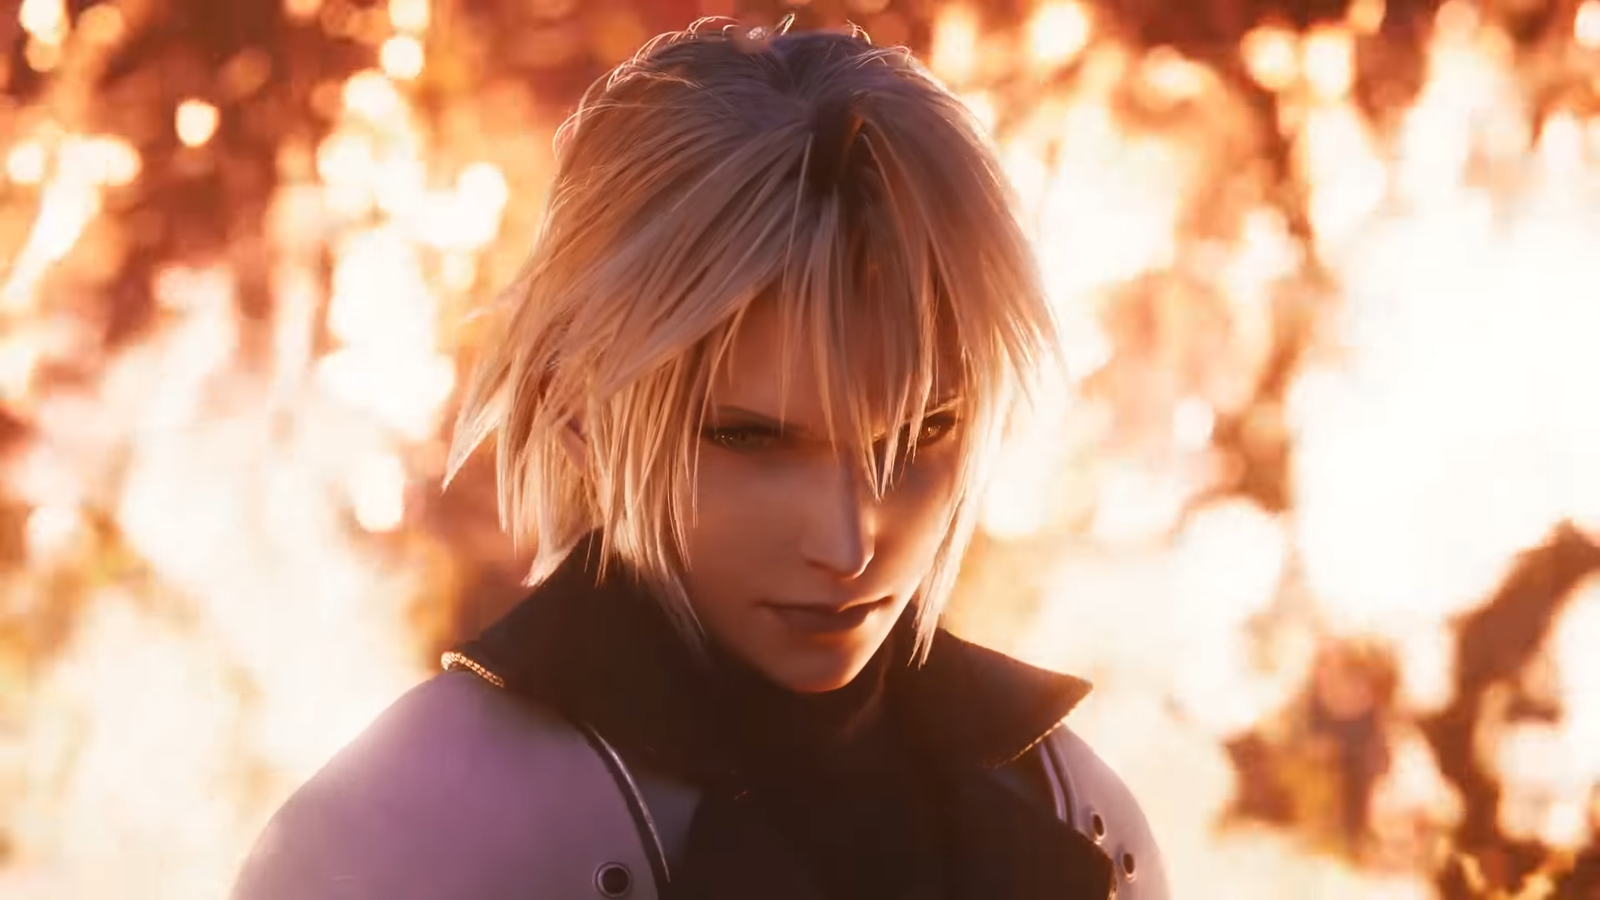 Final Fantasy VII: Ever Crisis Release Set For September 7th